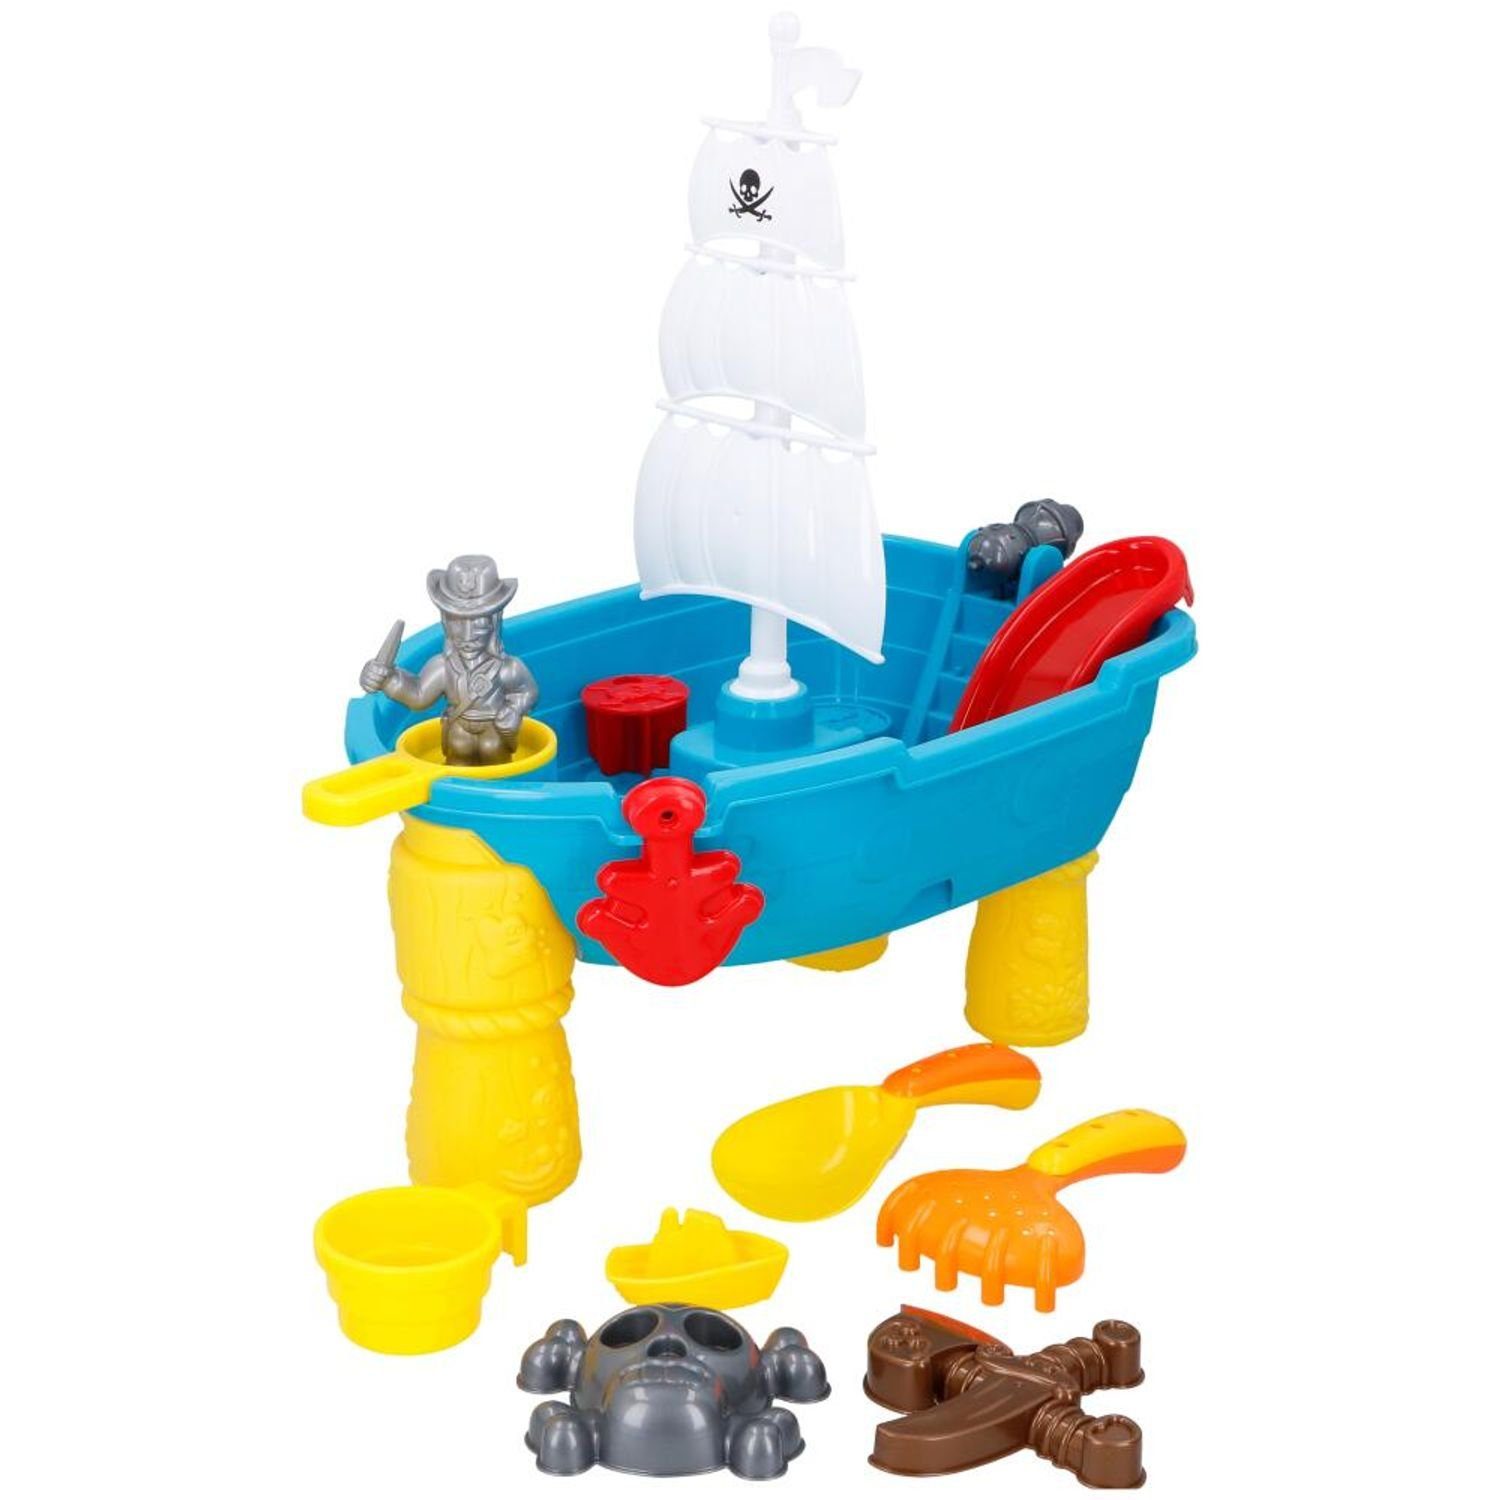 EDCO Gartentisch Schaufel Förmchen Spieltisch Spielzeug Harke Wasser Sandkasten Kinder